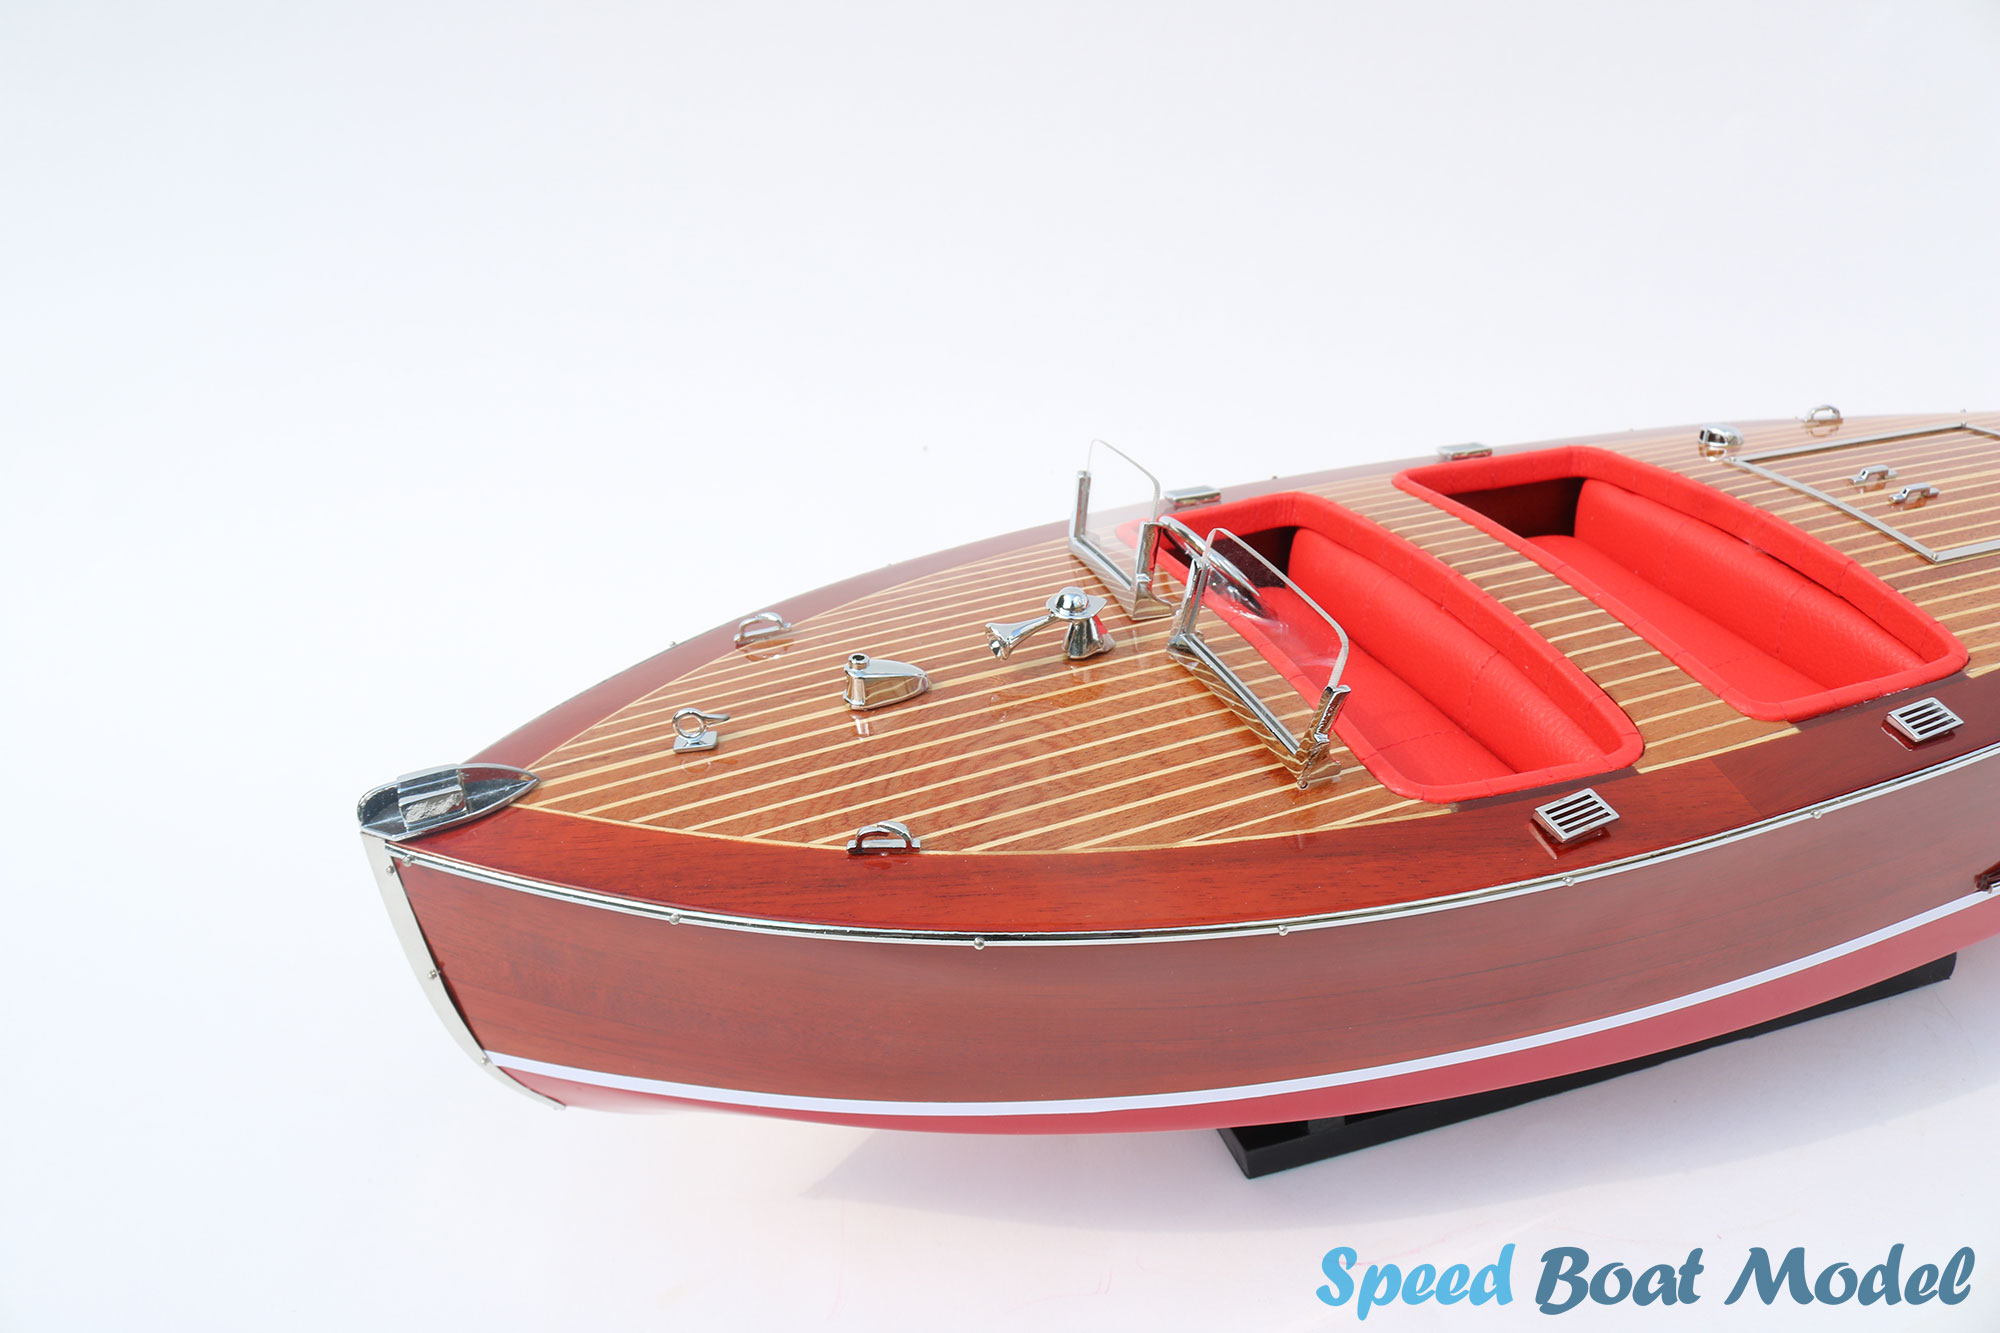 Red Chris Craft Barrel Back 1940 Speed Boat Model 33.6